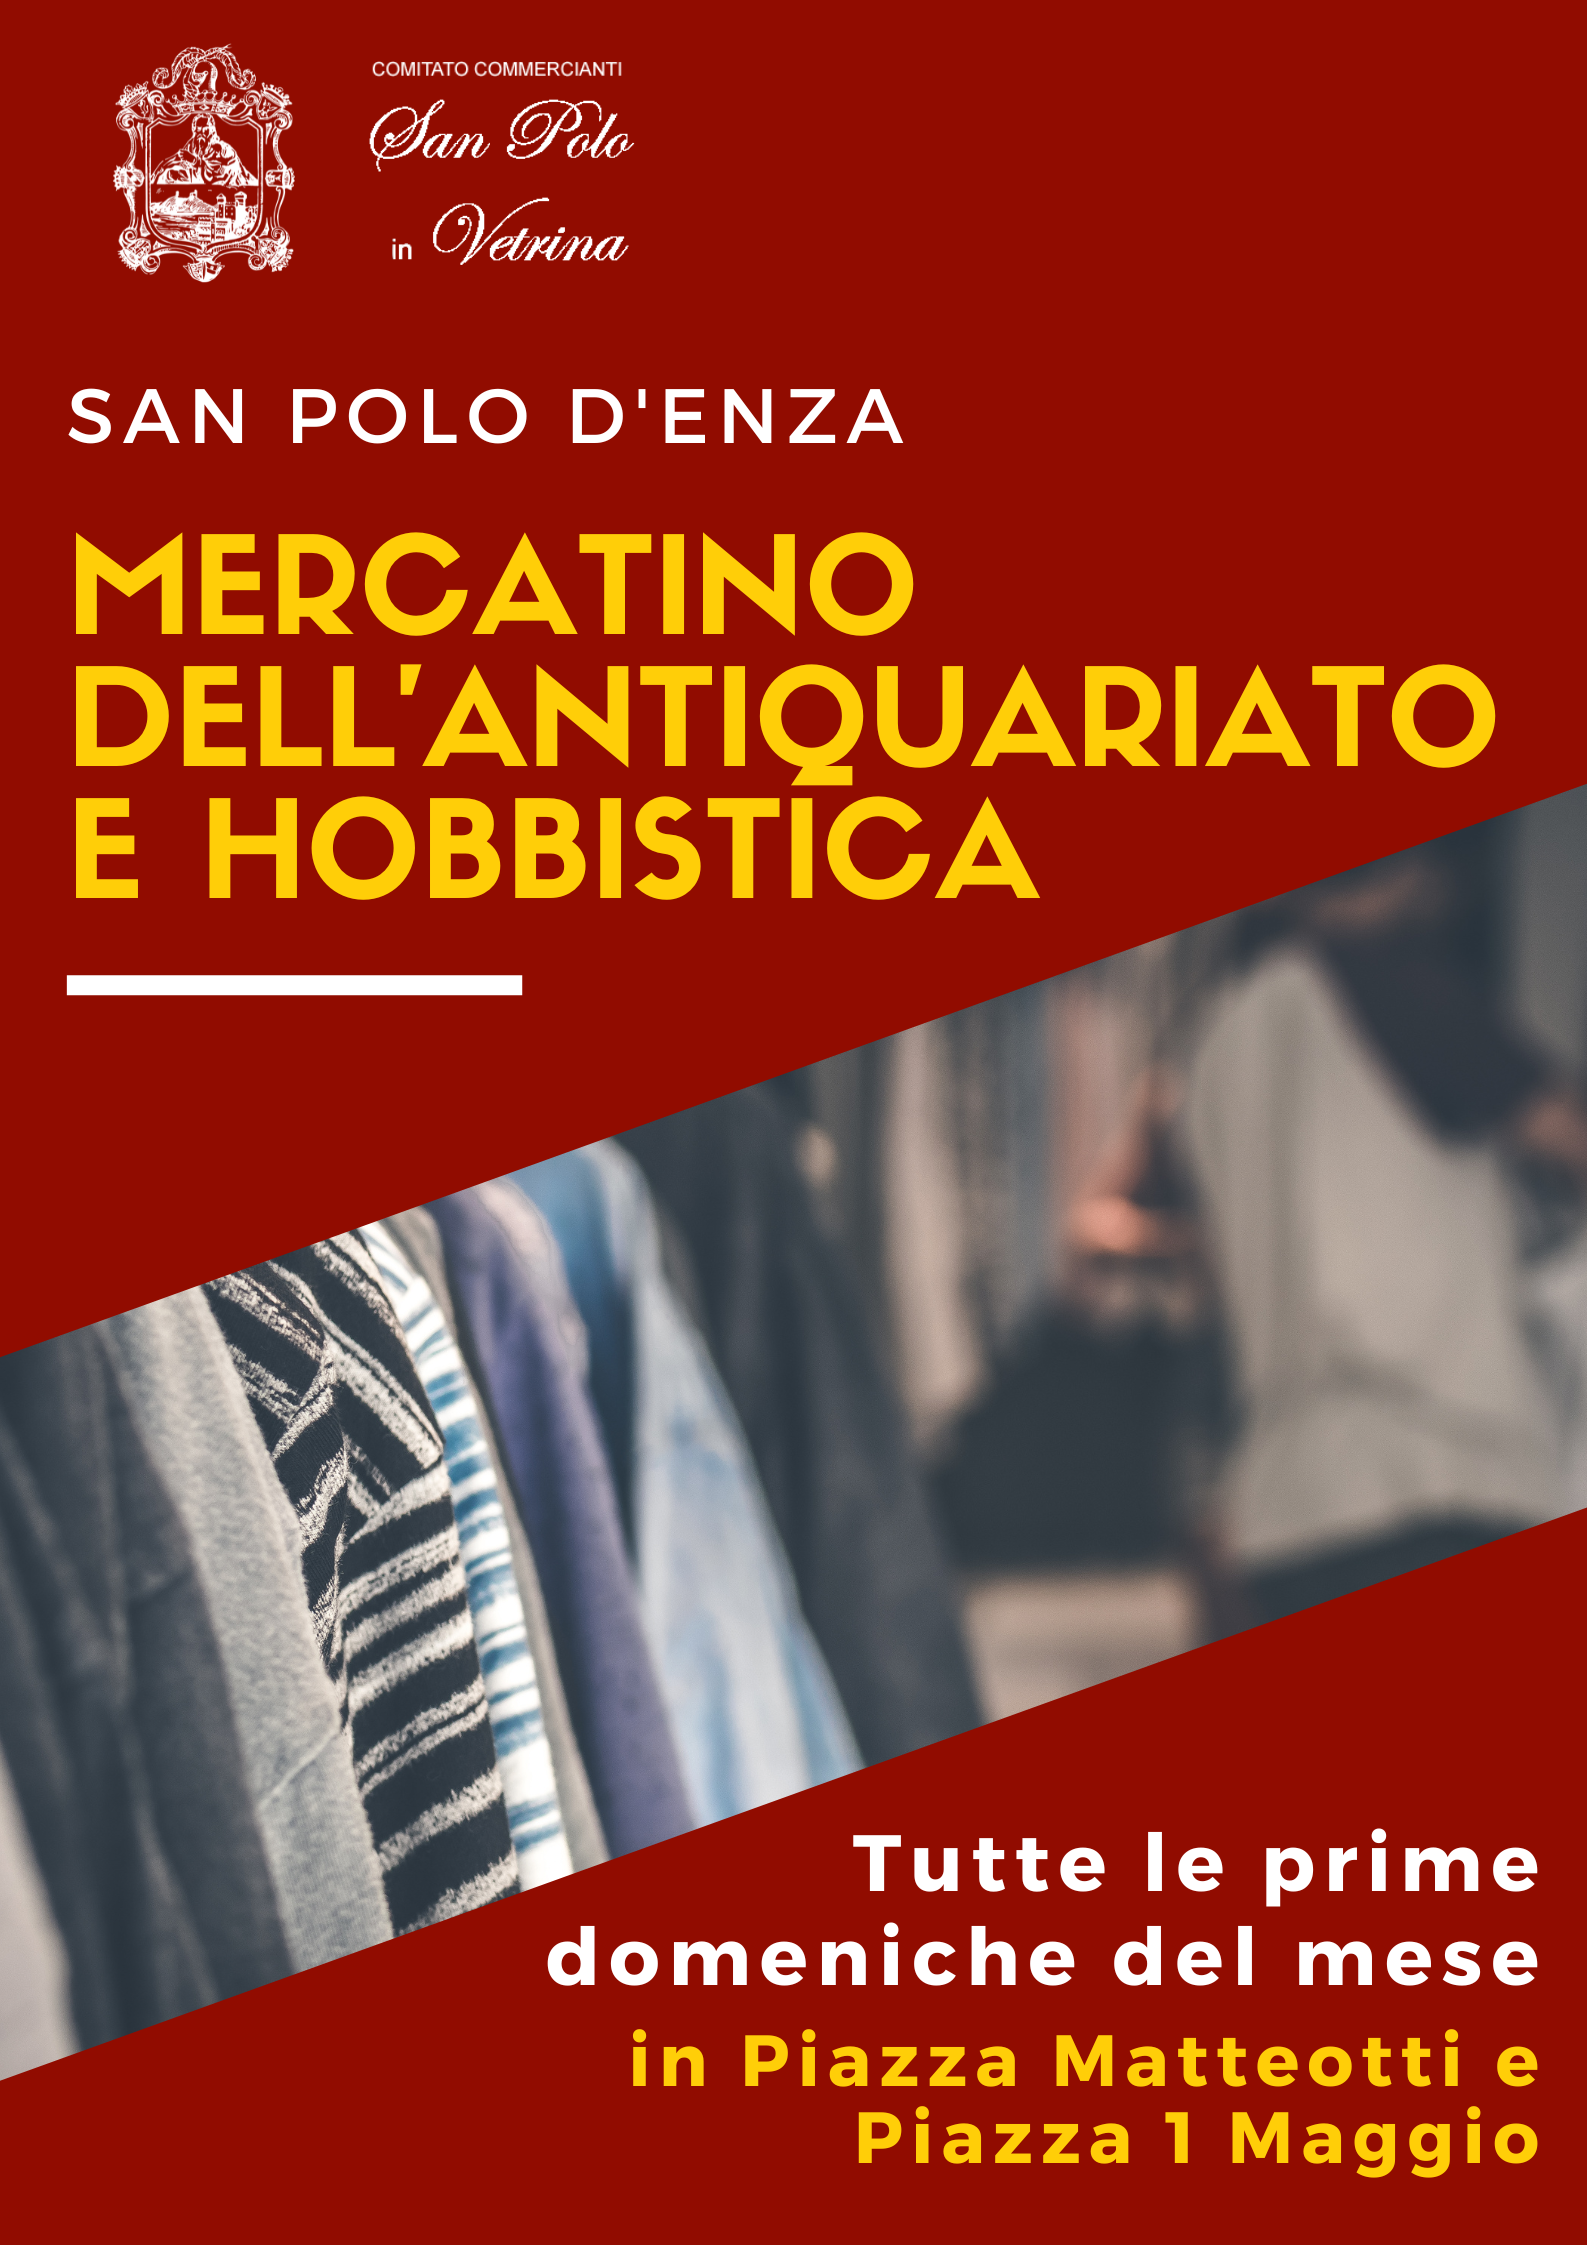 Volantino:  San Polo d'Enza, mercatino dell'antiquariato e hobbistica, tutte le prime domeniche del mese in Piazza Matteotti e Piazza 1° Maggio